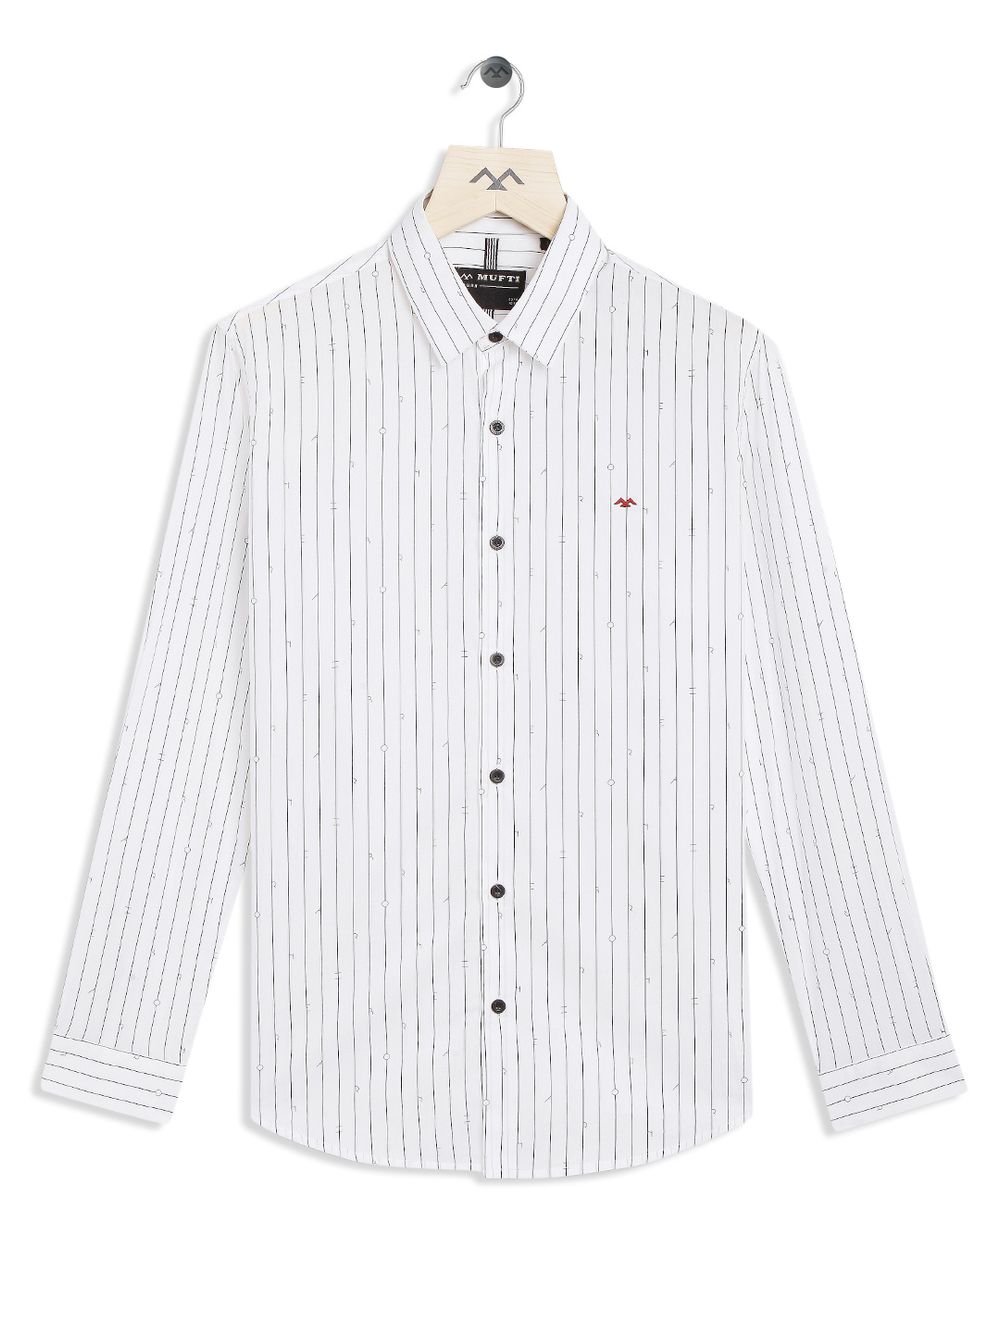 White & Black Printed Stripe Slim Fit Casual Shirt